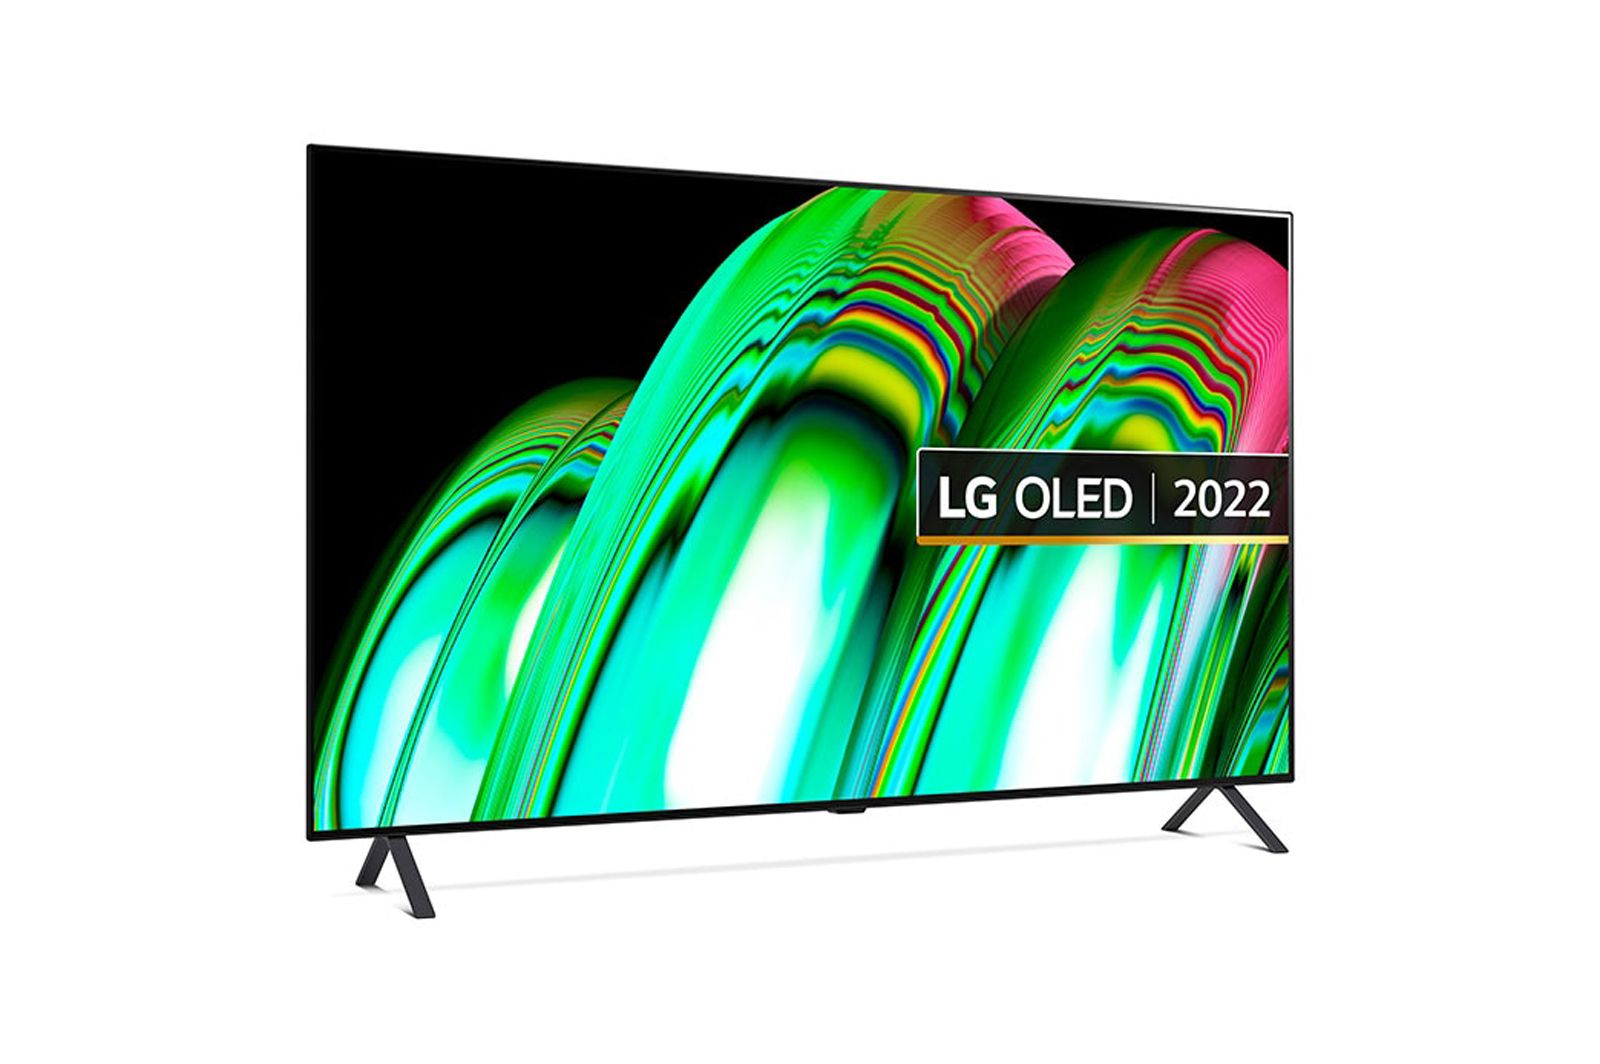 LG OLED TV 2022 image 3